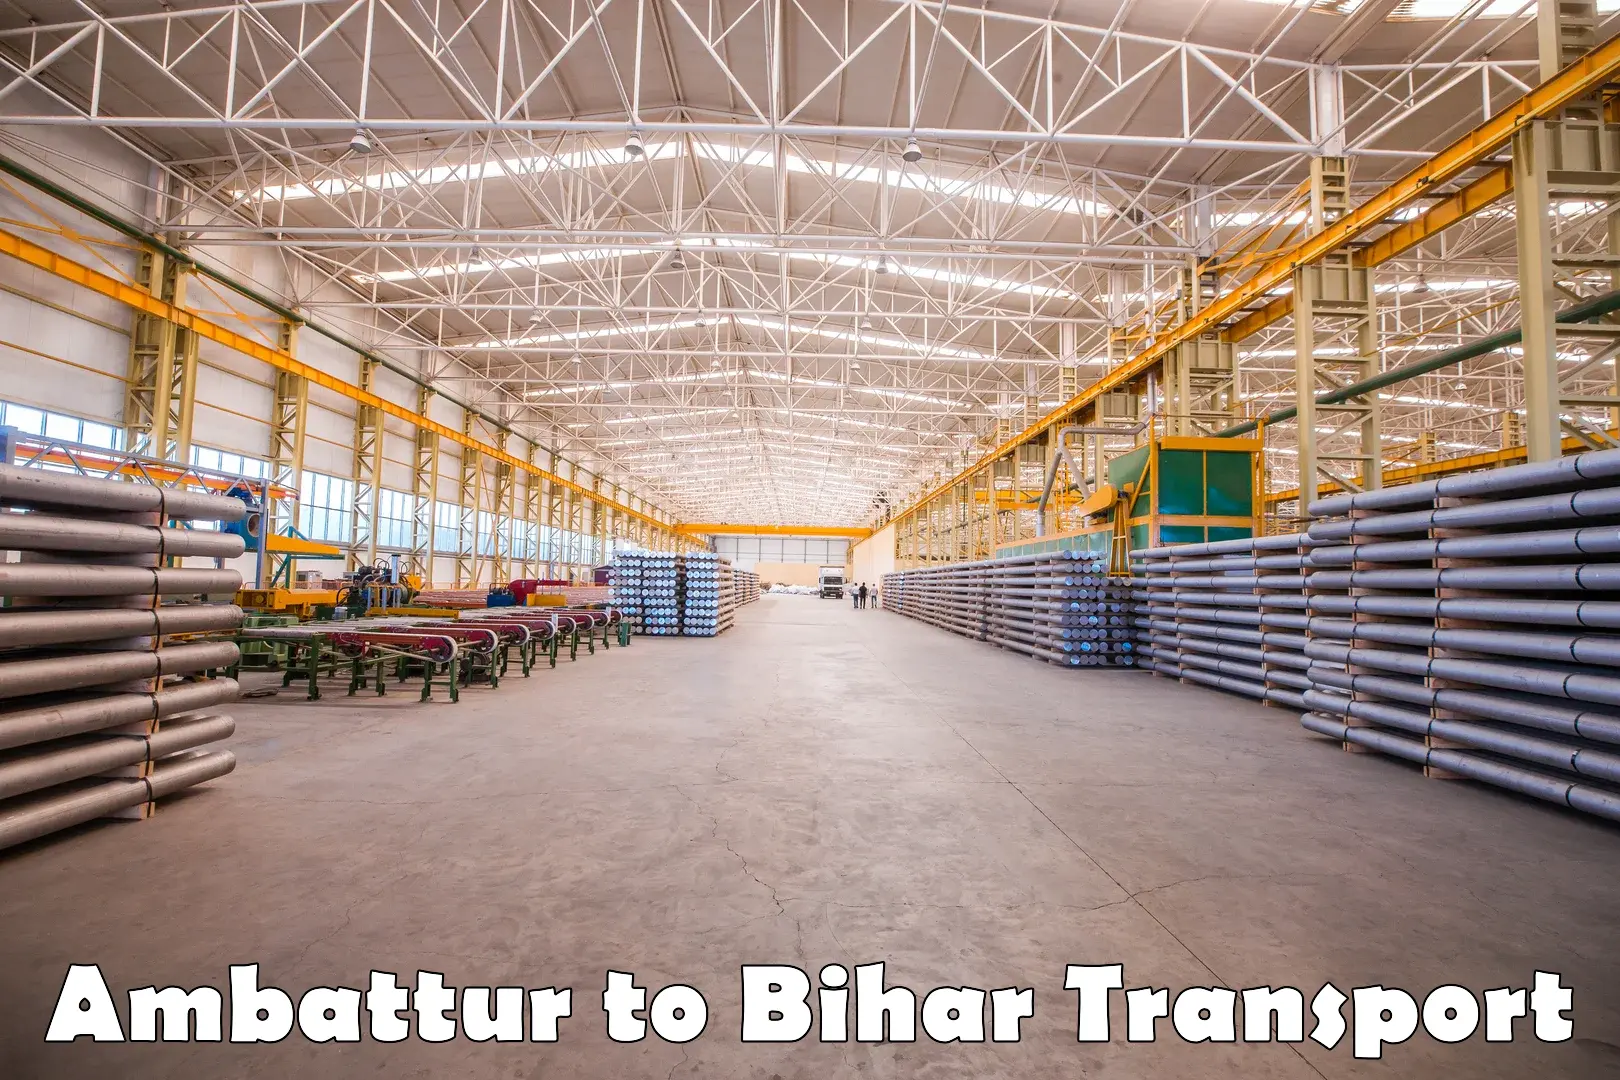 Online transport service Ambattur to Baisi